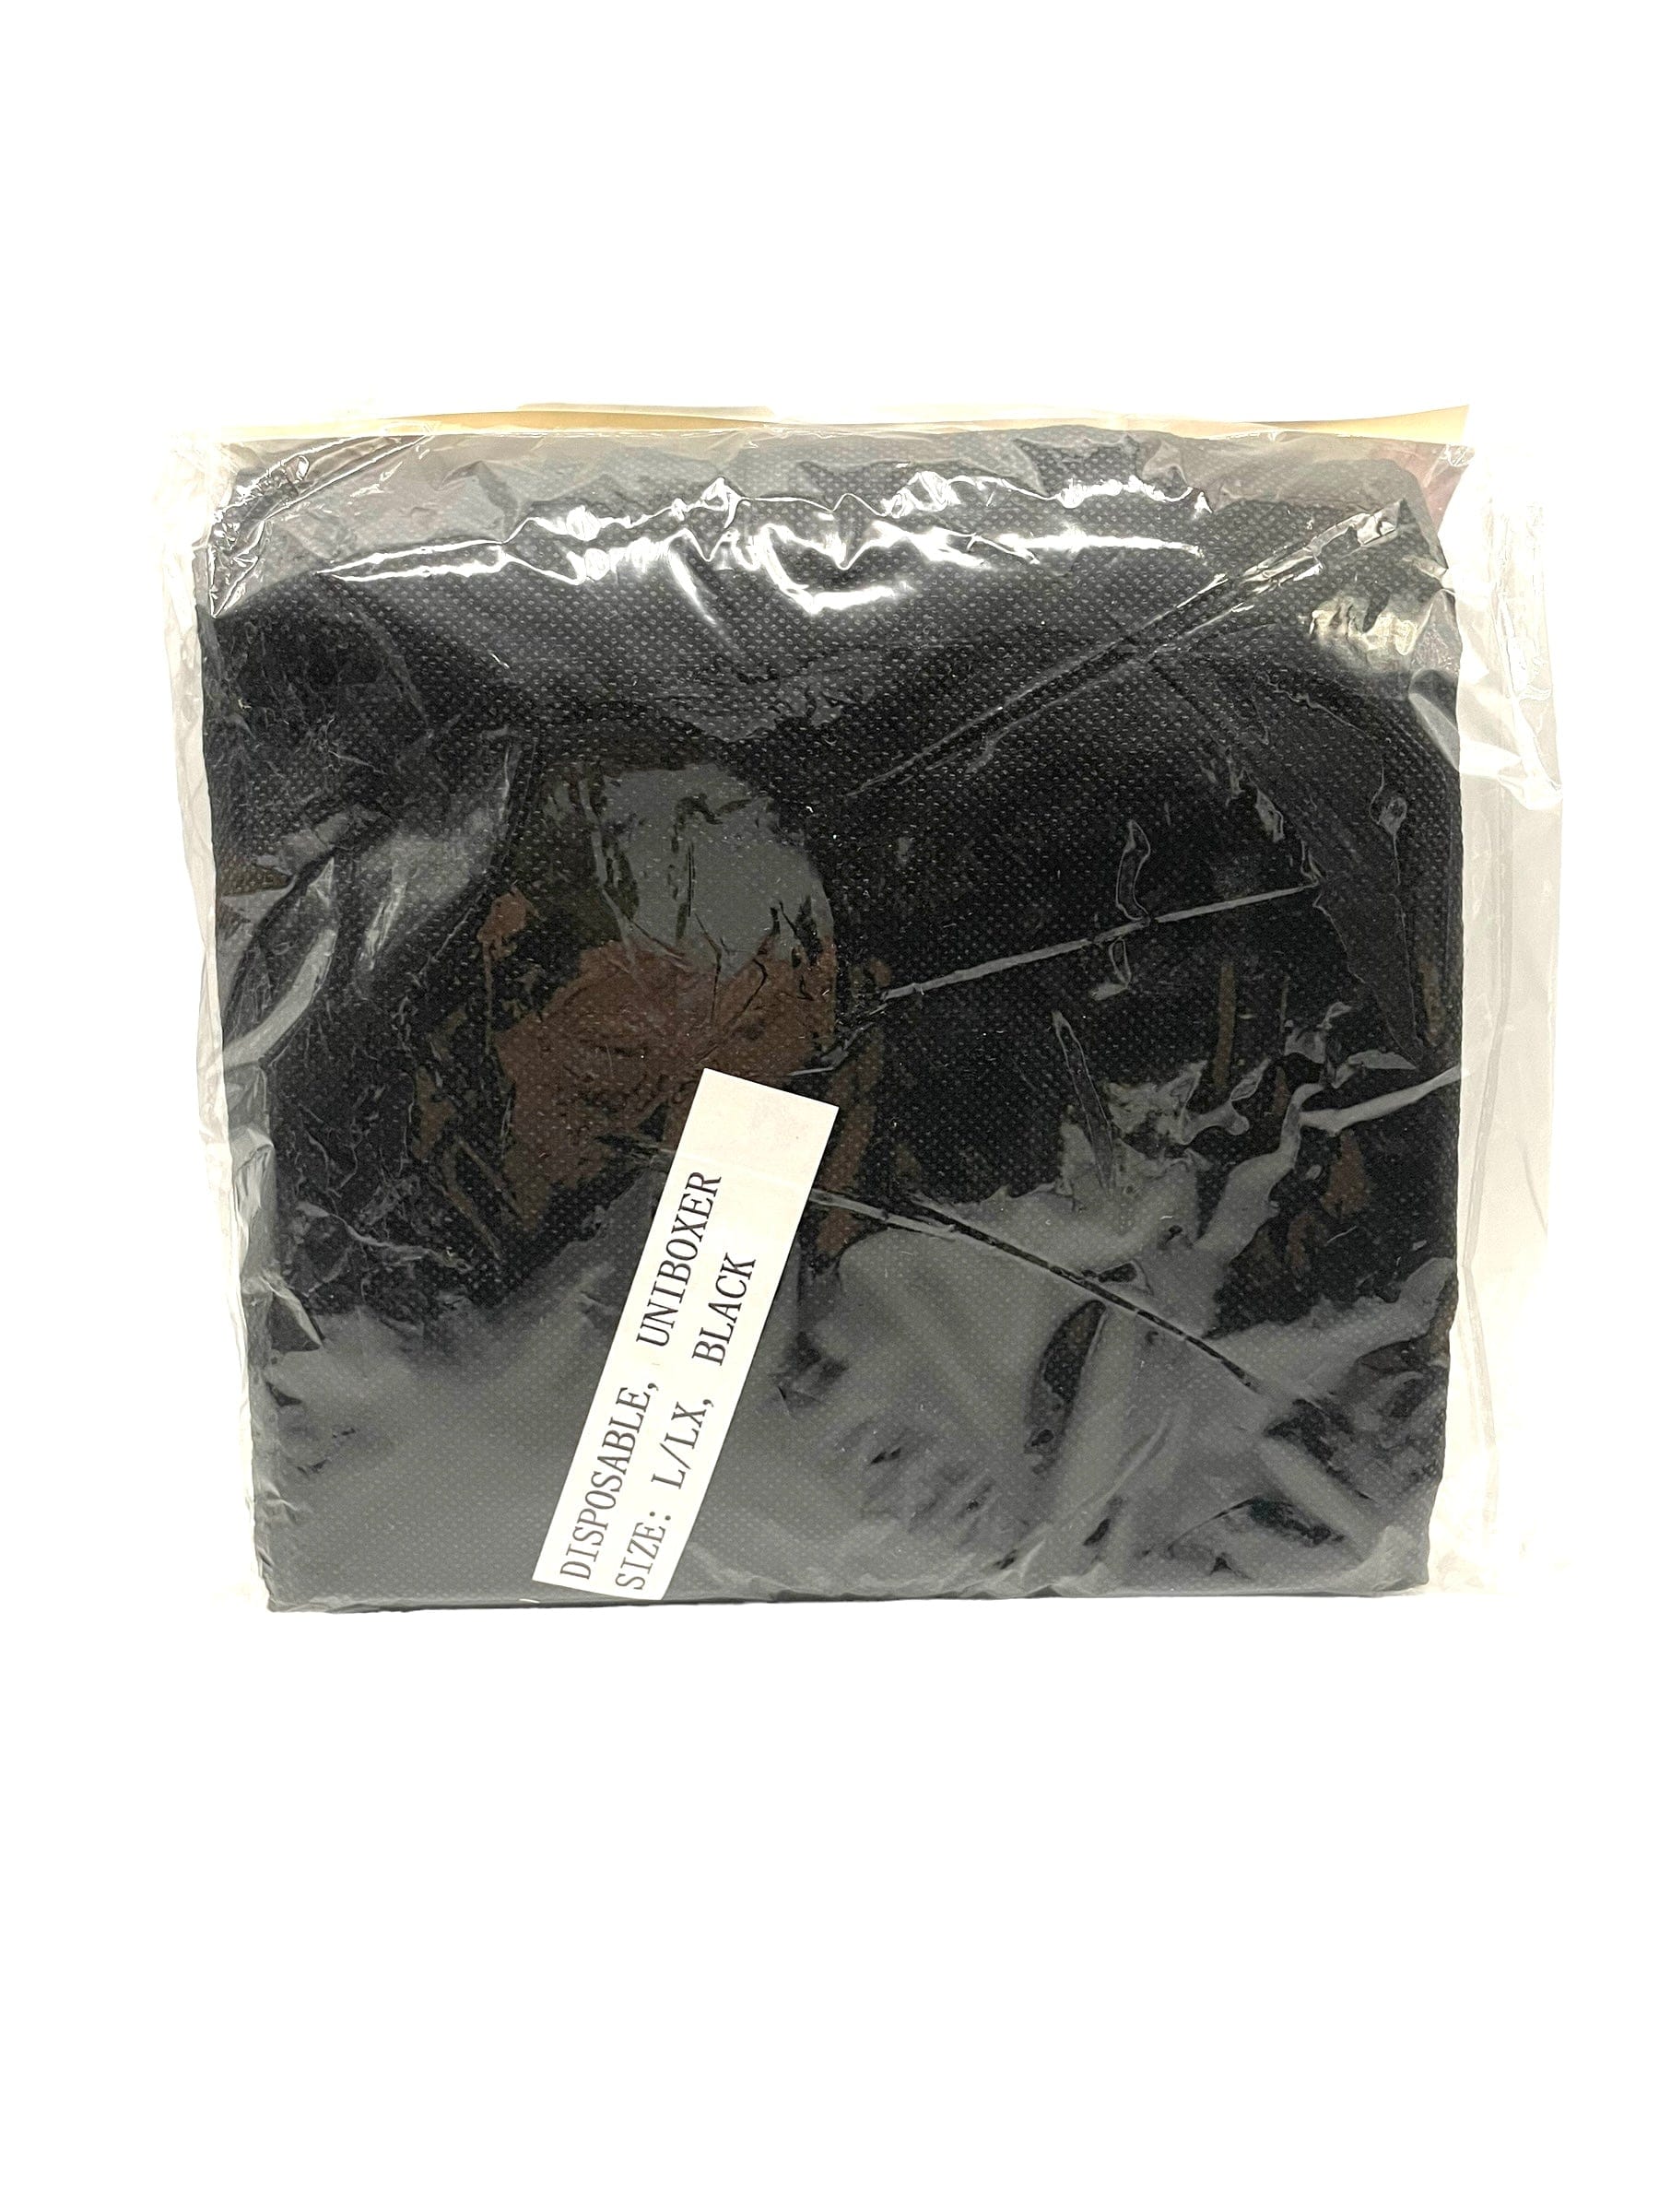 Disposable Underwear Boxer Unisex L-LX Black 6 PK Boxers Disposable